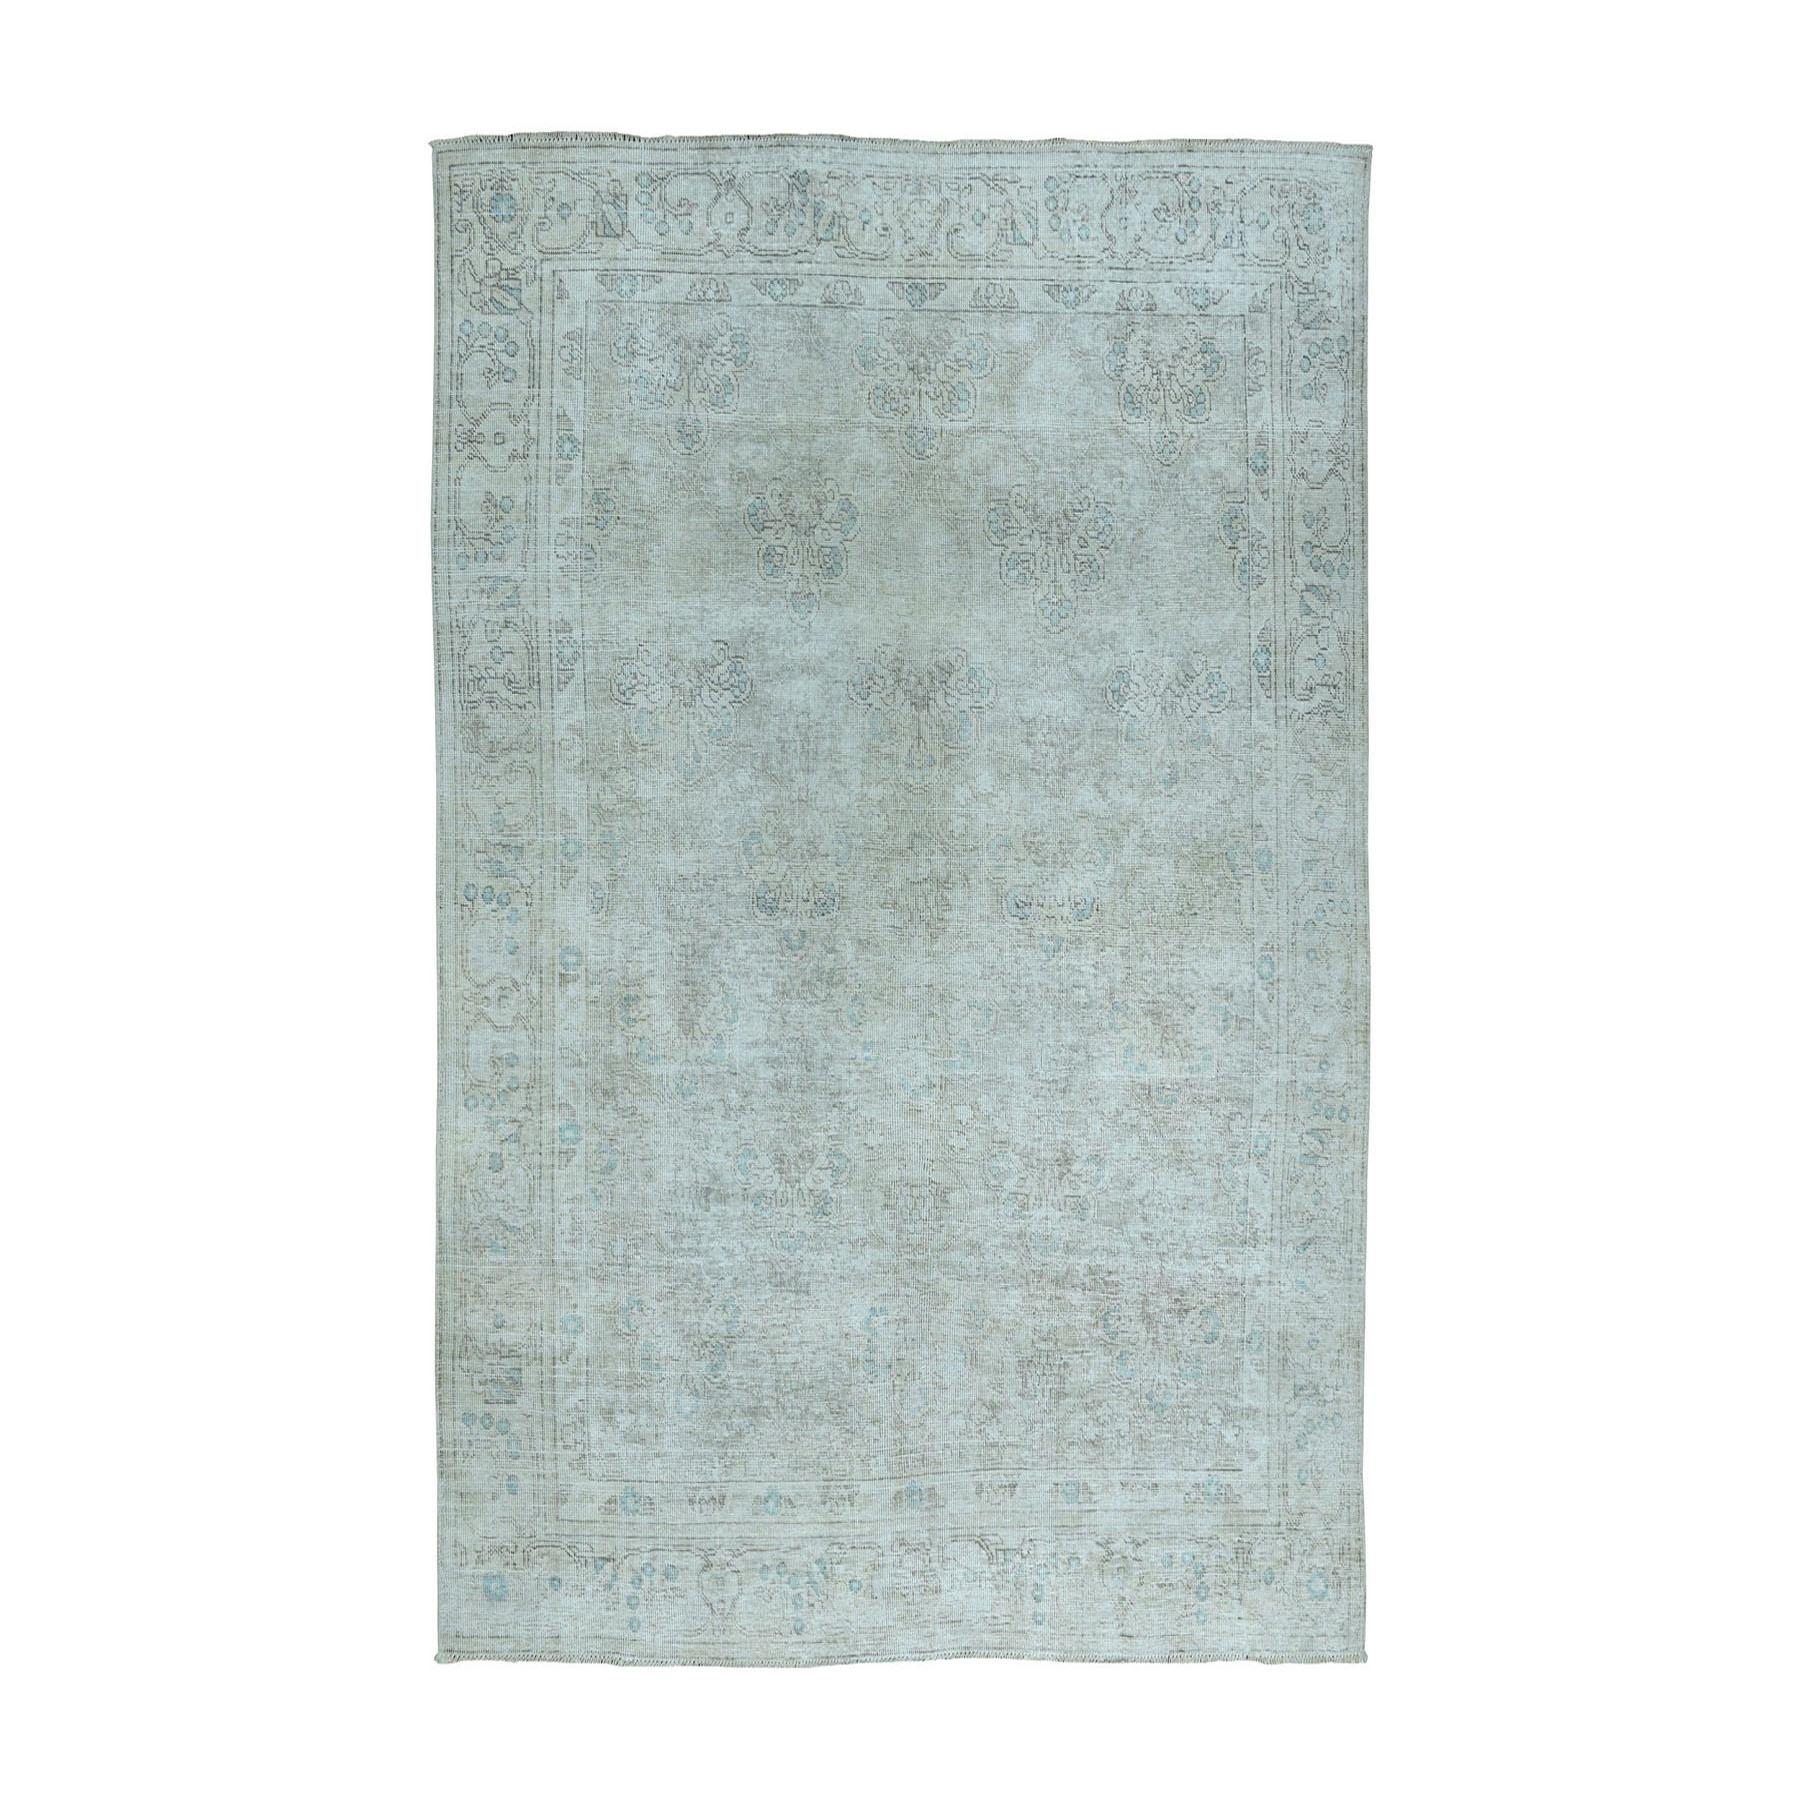 6'5"x9'1" Vintage White Wash Tabriz Worn Wool Hand Woven Oriental Rug 